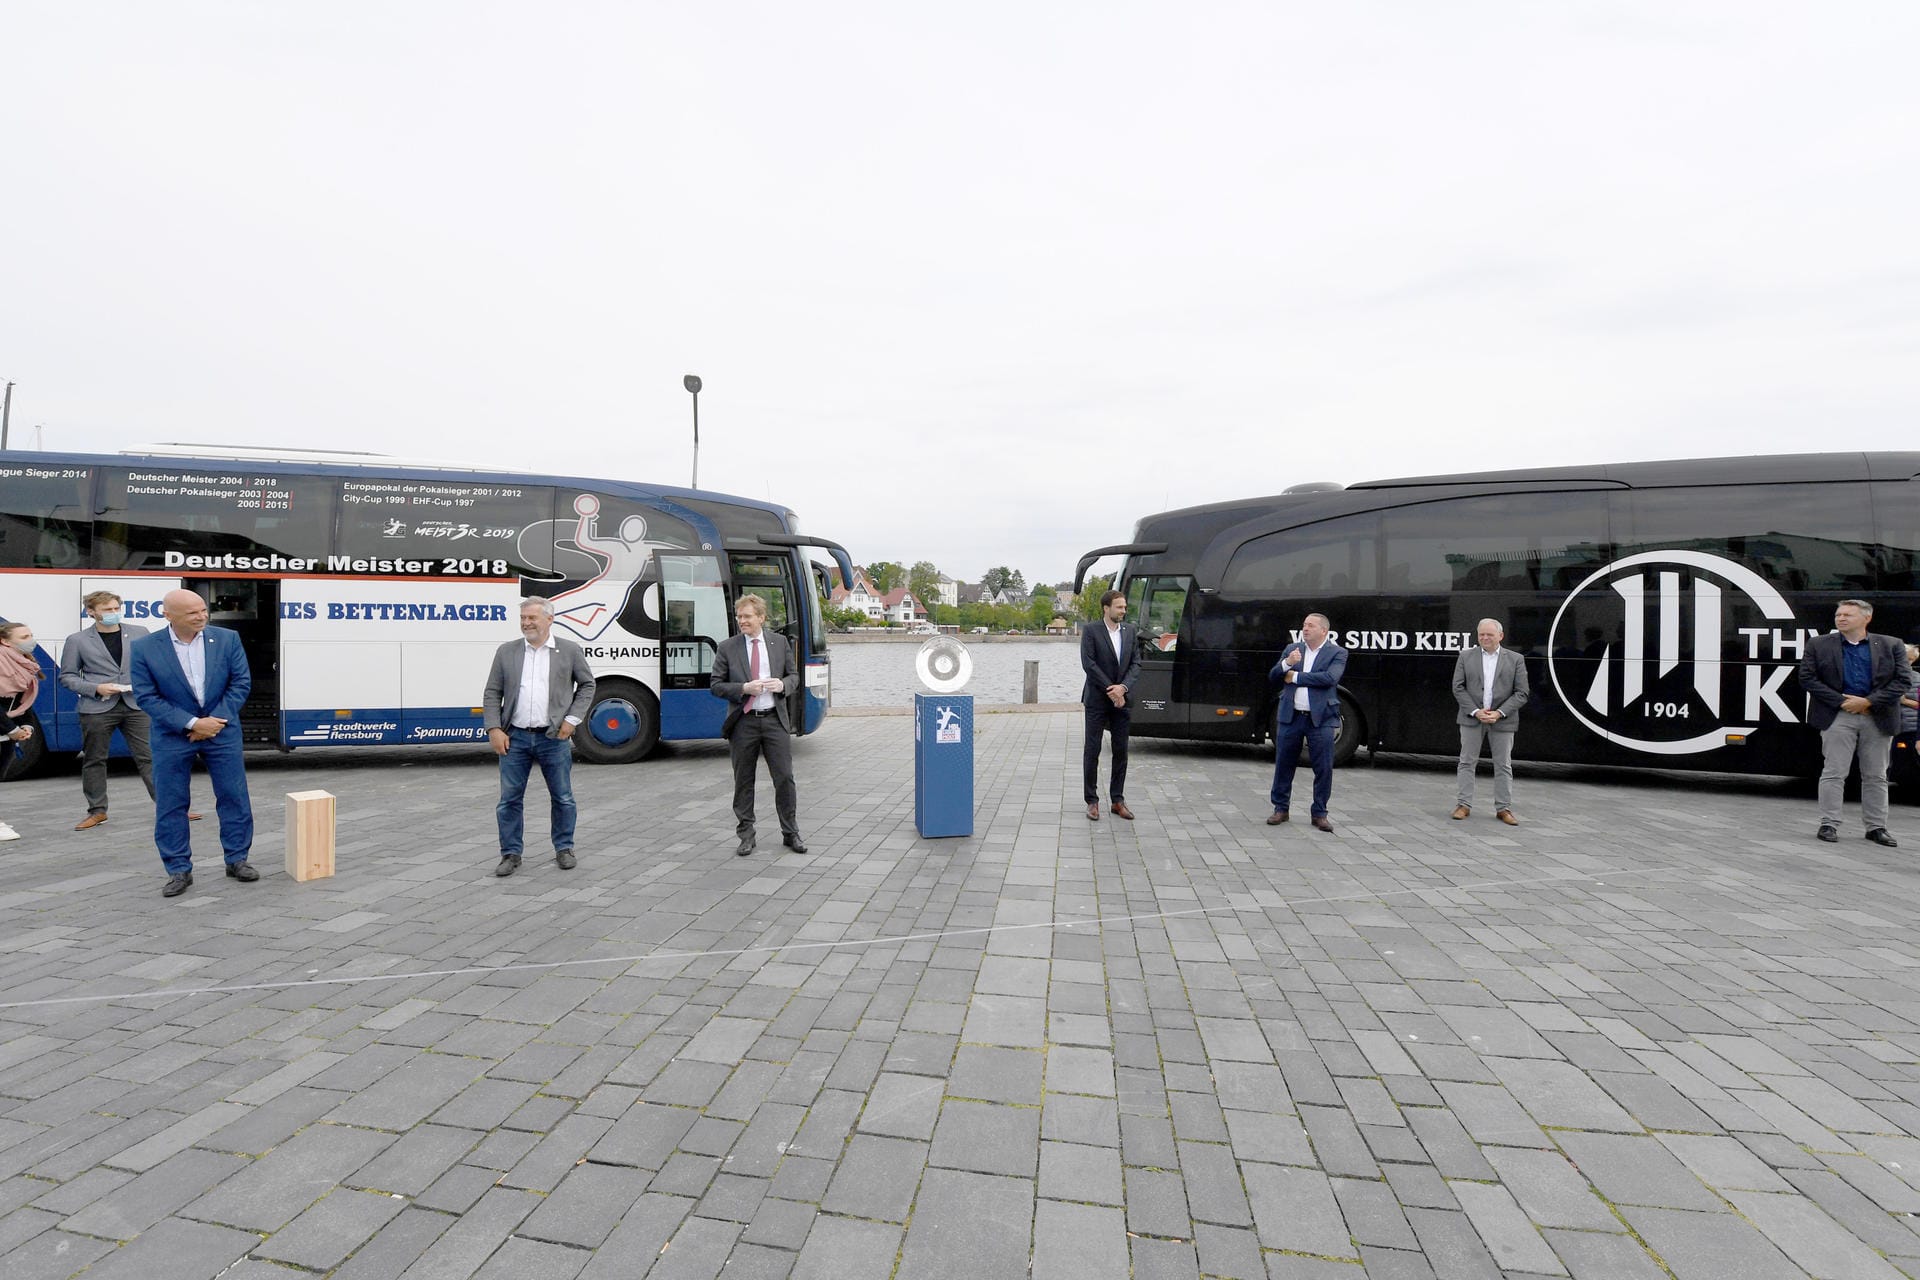 Zwischen den Mannschaftsbussen von SG Flensburg-Handewitt und THW Kiel steht die Meisterschale auf einem Sockel: Der THW Kiel war nach dem Saisonabbruch zum Meister erklärt worden.